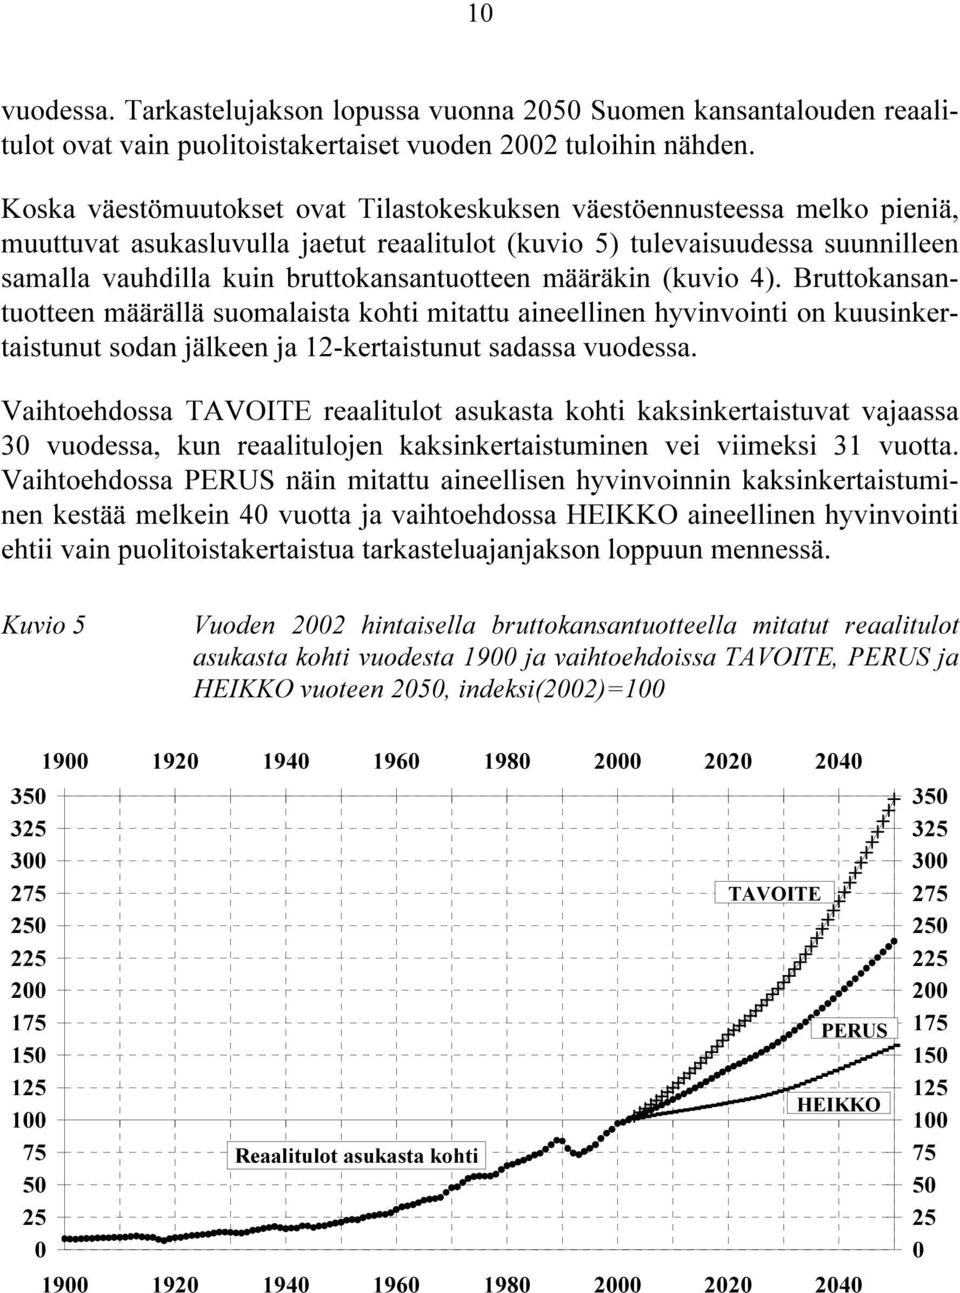 bruttokansantuotteen määräkin (kuvio 4). Bruttokansantuotteen määrällä suomalaista kohti mitattu aineellinen hyvinvointi on kuusinkertaistunut sodan jälkeen ja 12-kertaistunut sadassa vuodessa.